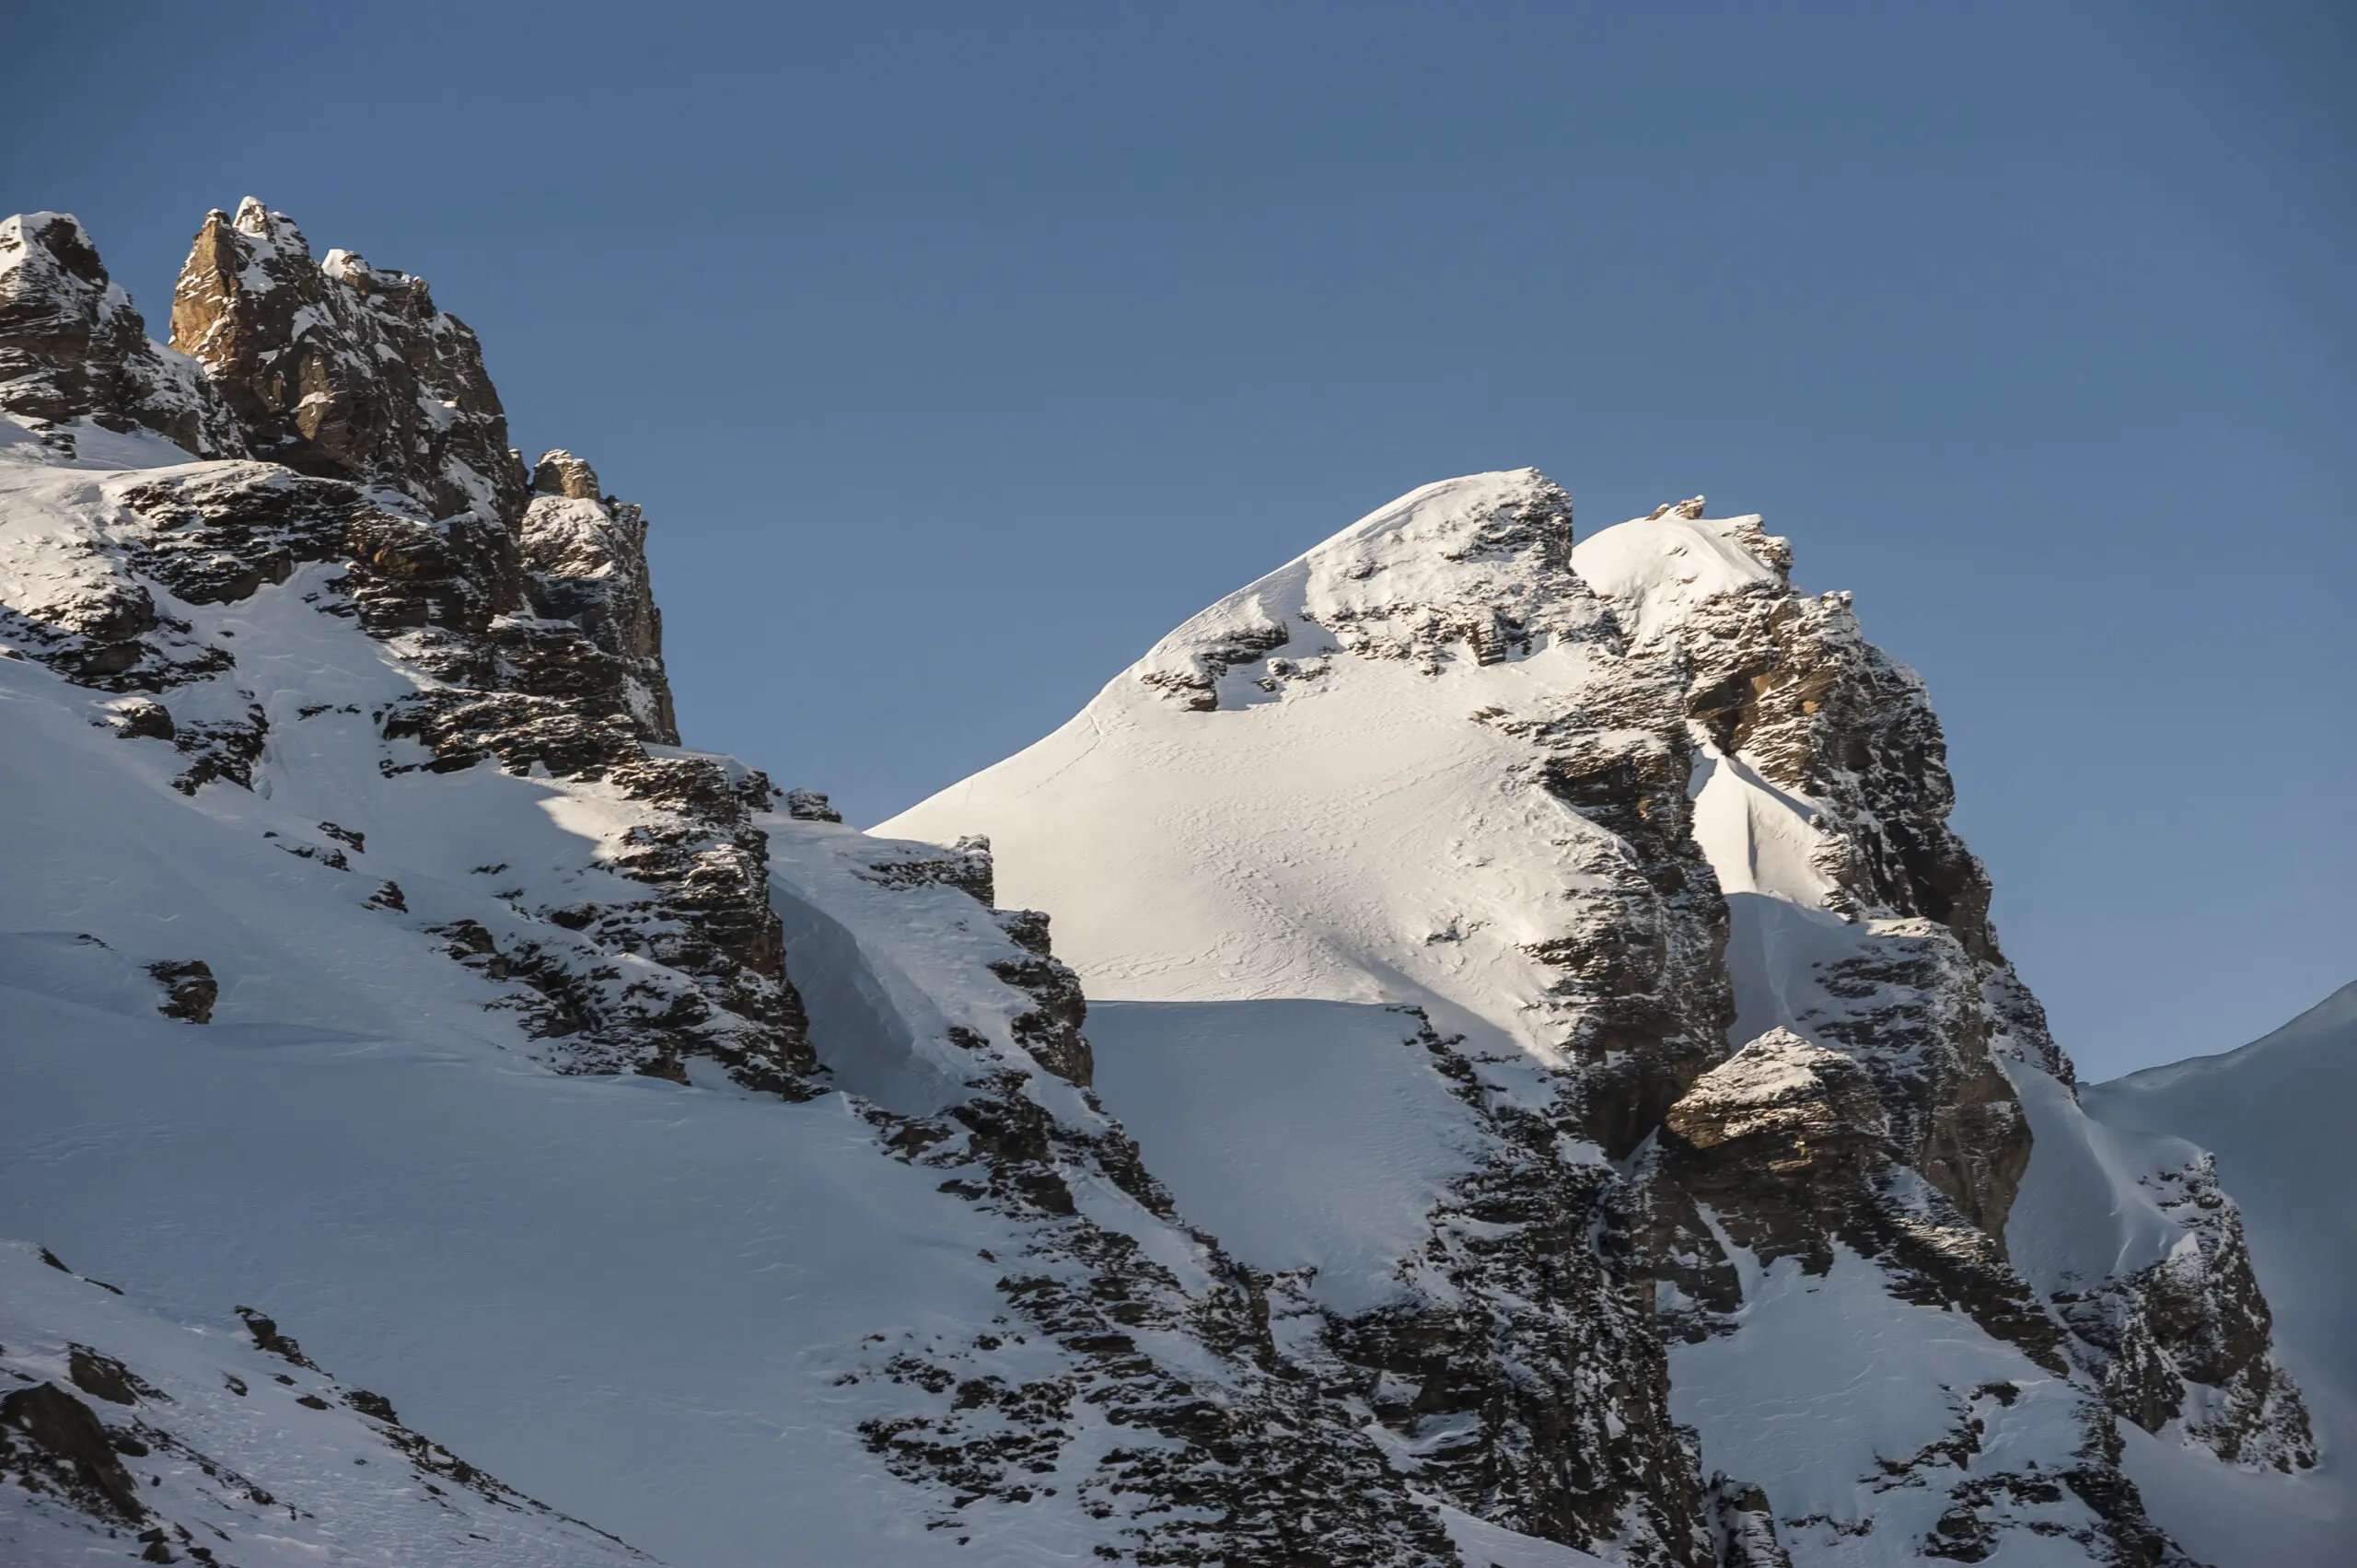 Wandbild (3622) Gamskogel präsentiert: Landschaften,Schnee und Eis,Winter,Berge